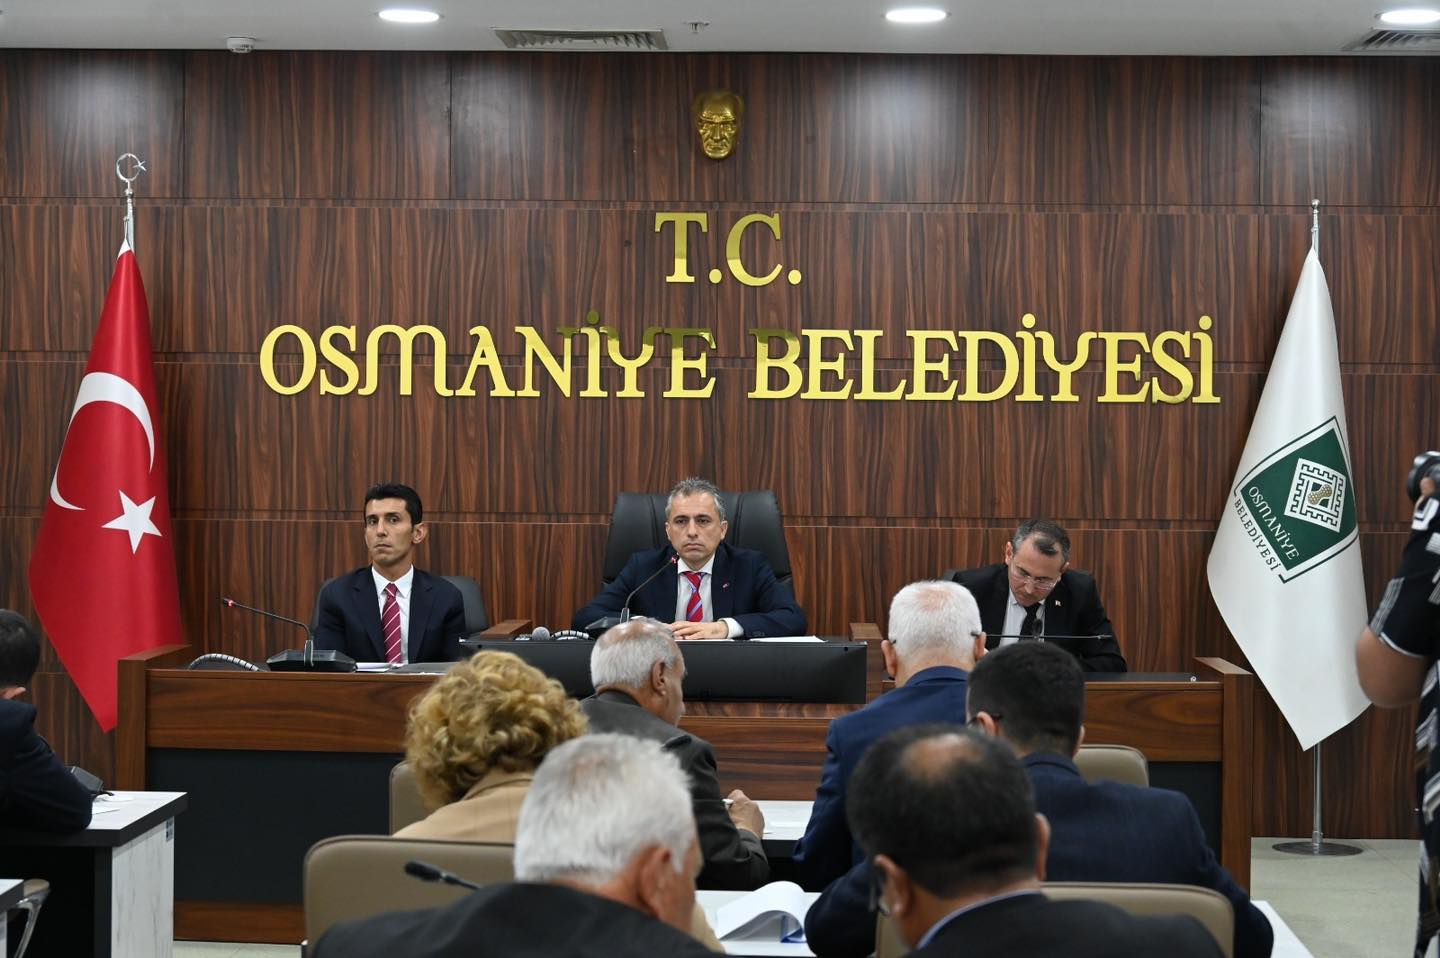 Osmaniye Belediye Meclisi, Yeni Döneme Başkan Çenet Yönetiminde Başladı (2)